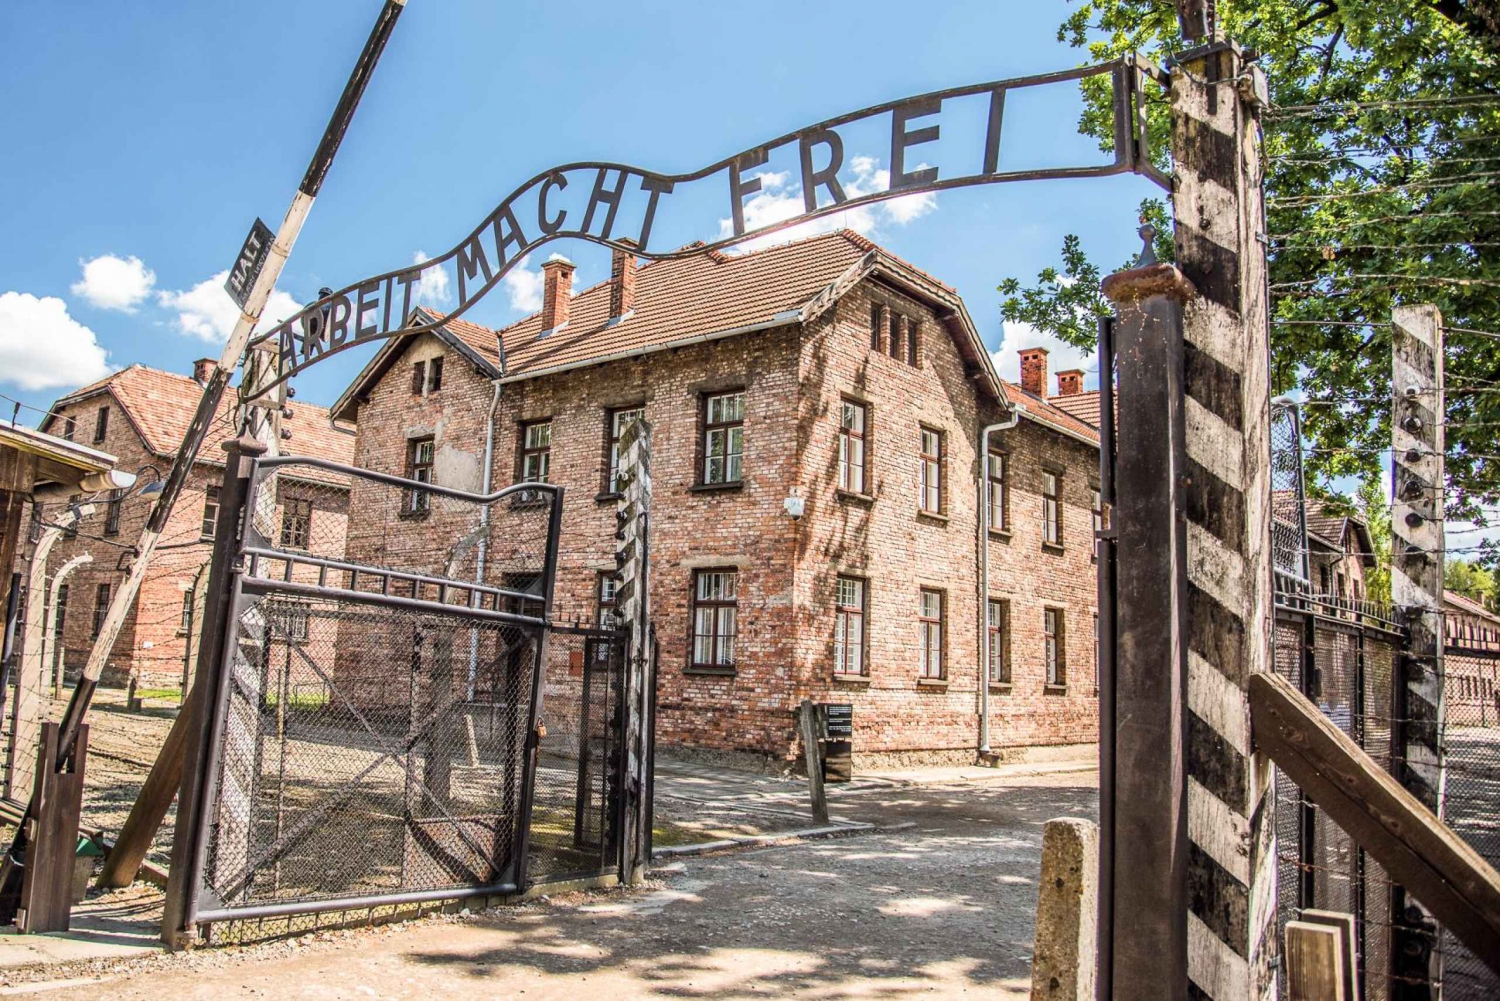 Z Krakowa: Auschwitz i Kopalnia Soli w Wieliczce - wycieczka 1-dniowa